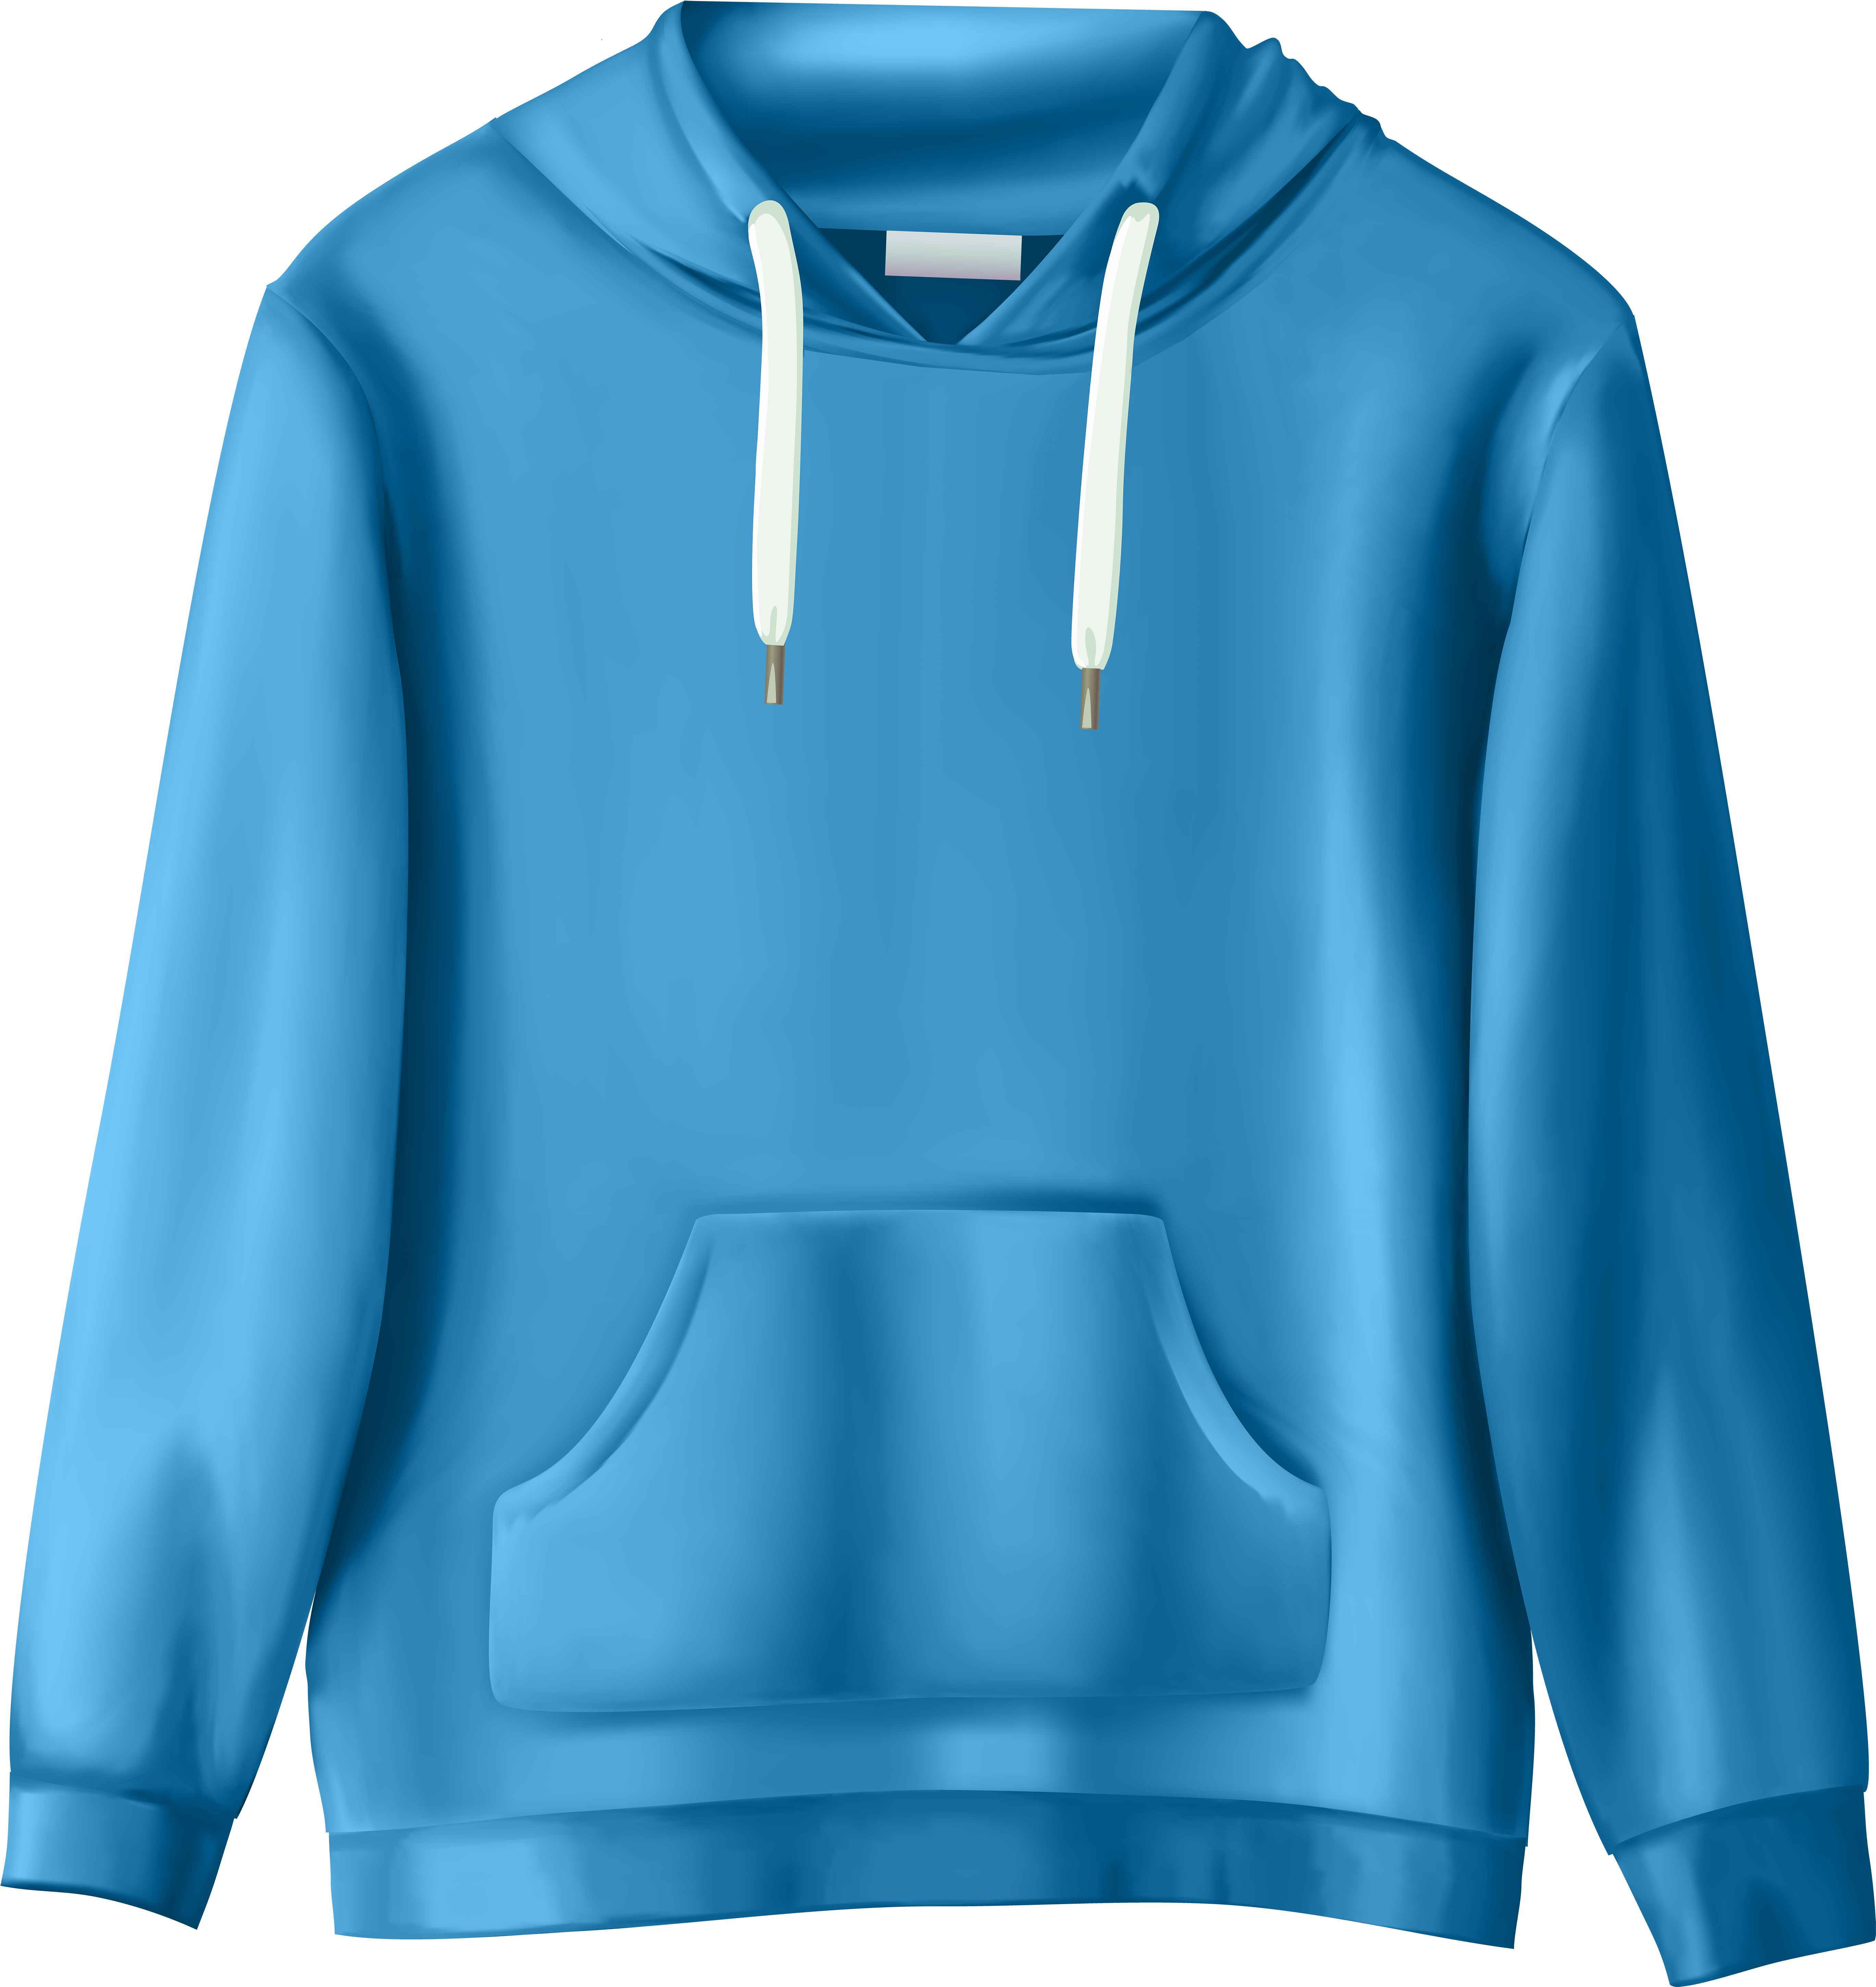 Blue Sweatshirt Png Clip Art - Clothes Transparent Background Clipart (5598x6000)